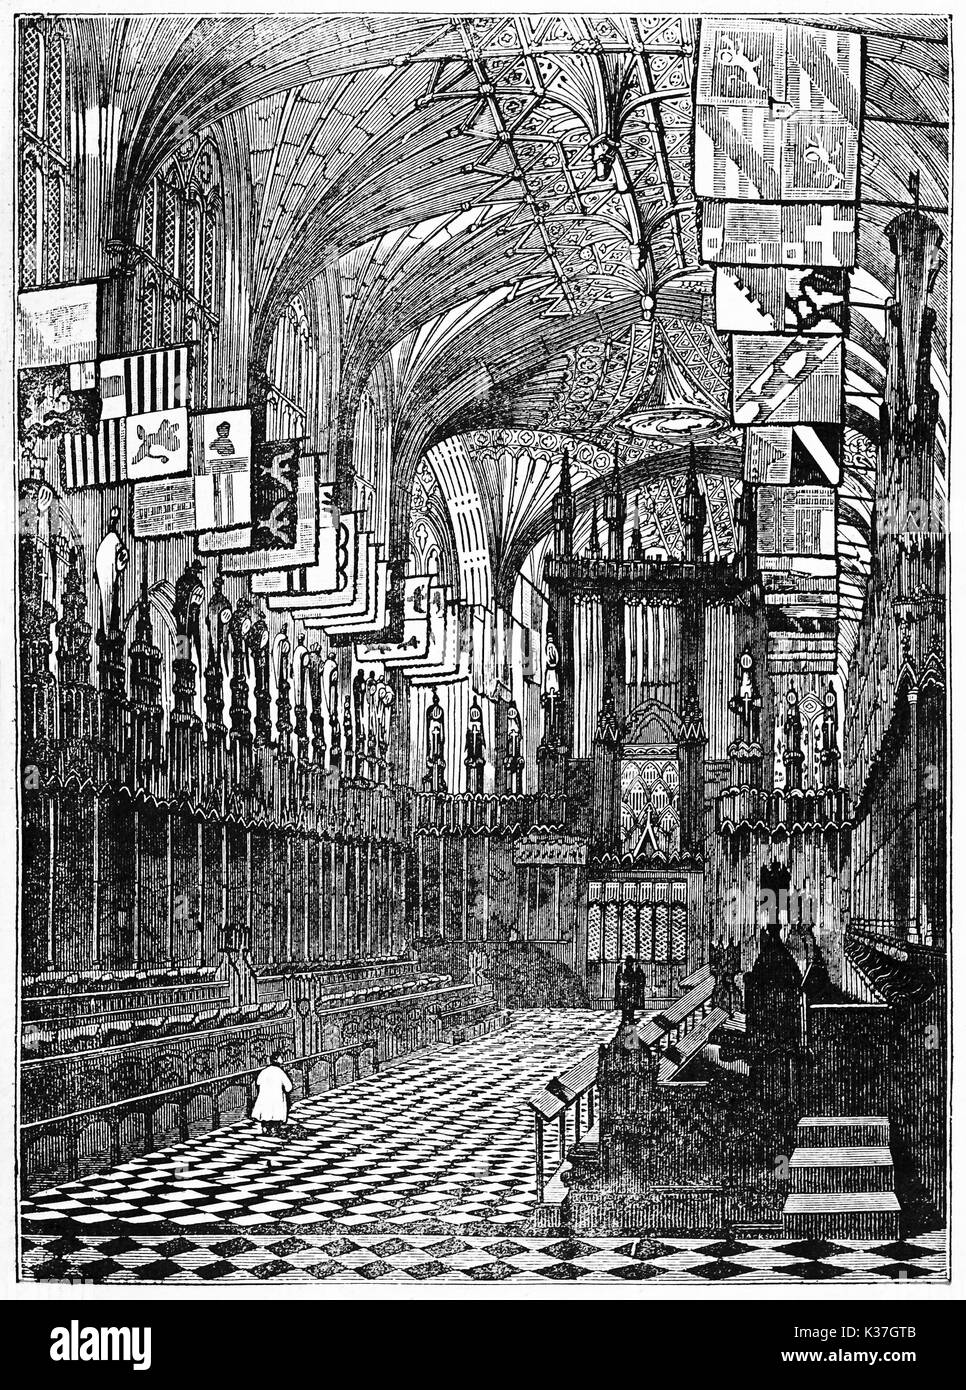 Una vista maestosa del castello di Windsor cappella interno con molti nobili bandiere poste sul tetto ad arco. Vecchia illustrazione di autore non identificato pubblicato il magasin pittoresco Parigi 1834. Foto Stock